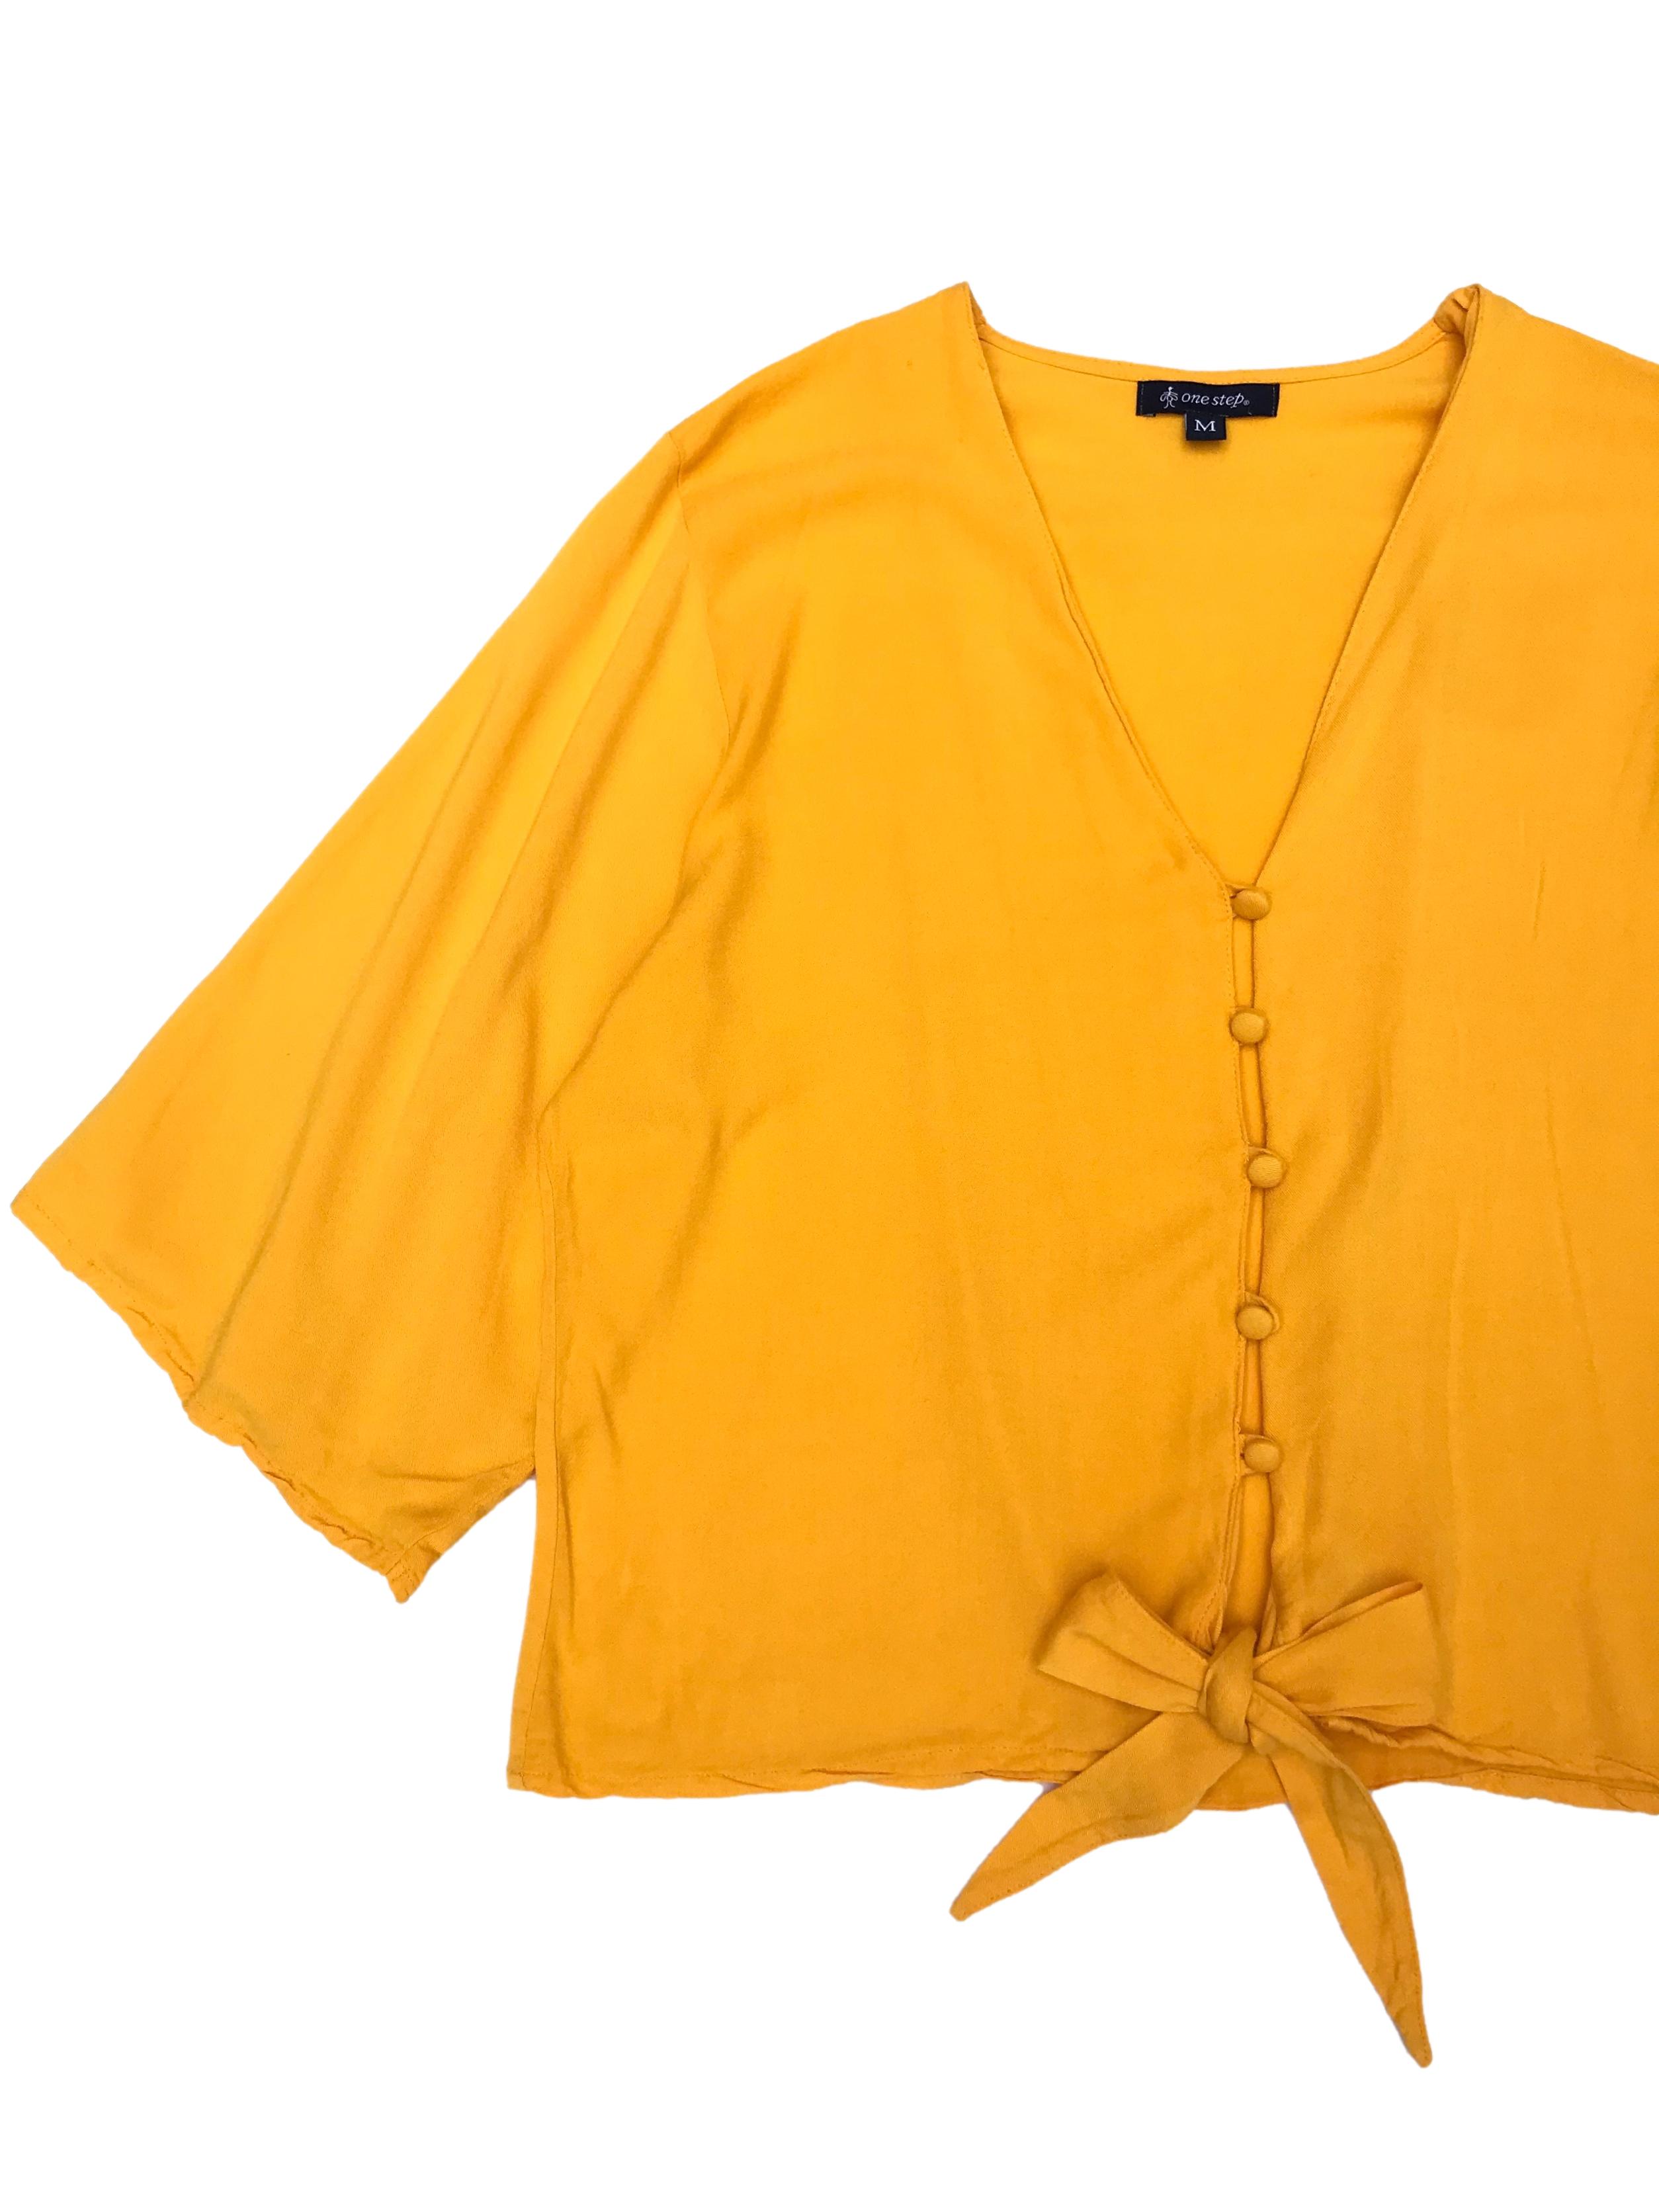 Blusa amarilla 100% rayón con botones al centro y se amarra en la basta. Busto 104cm Largo 47cm